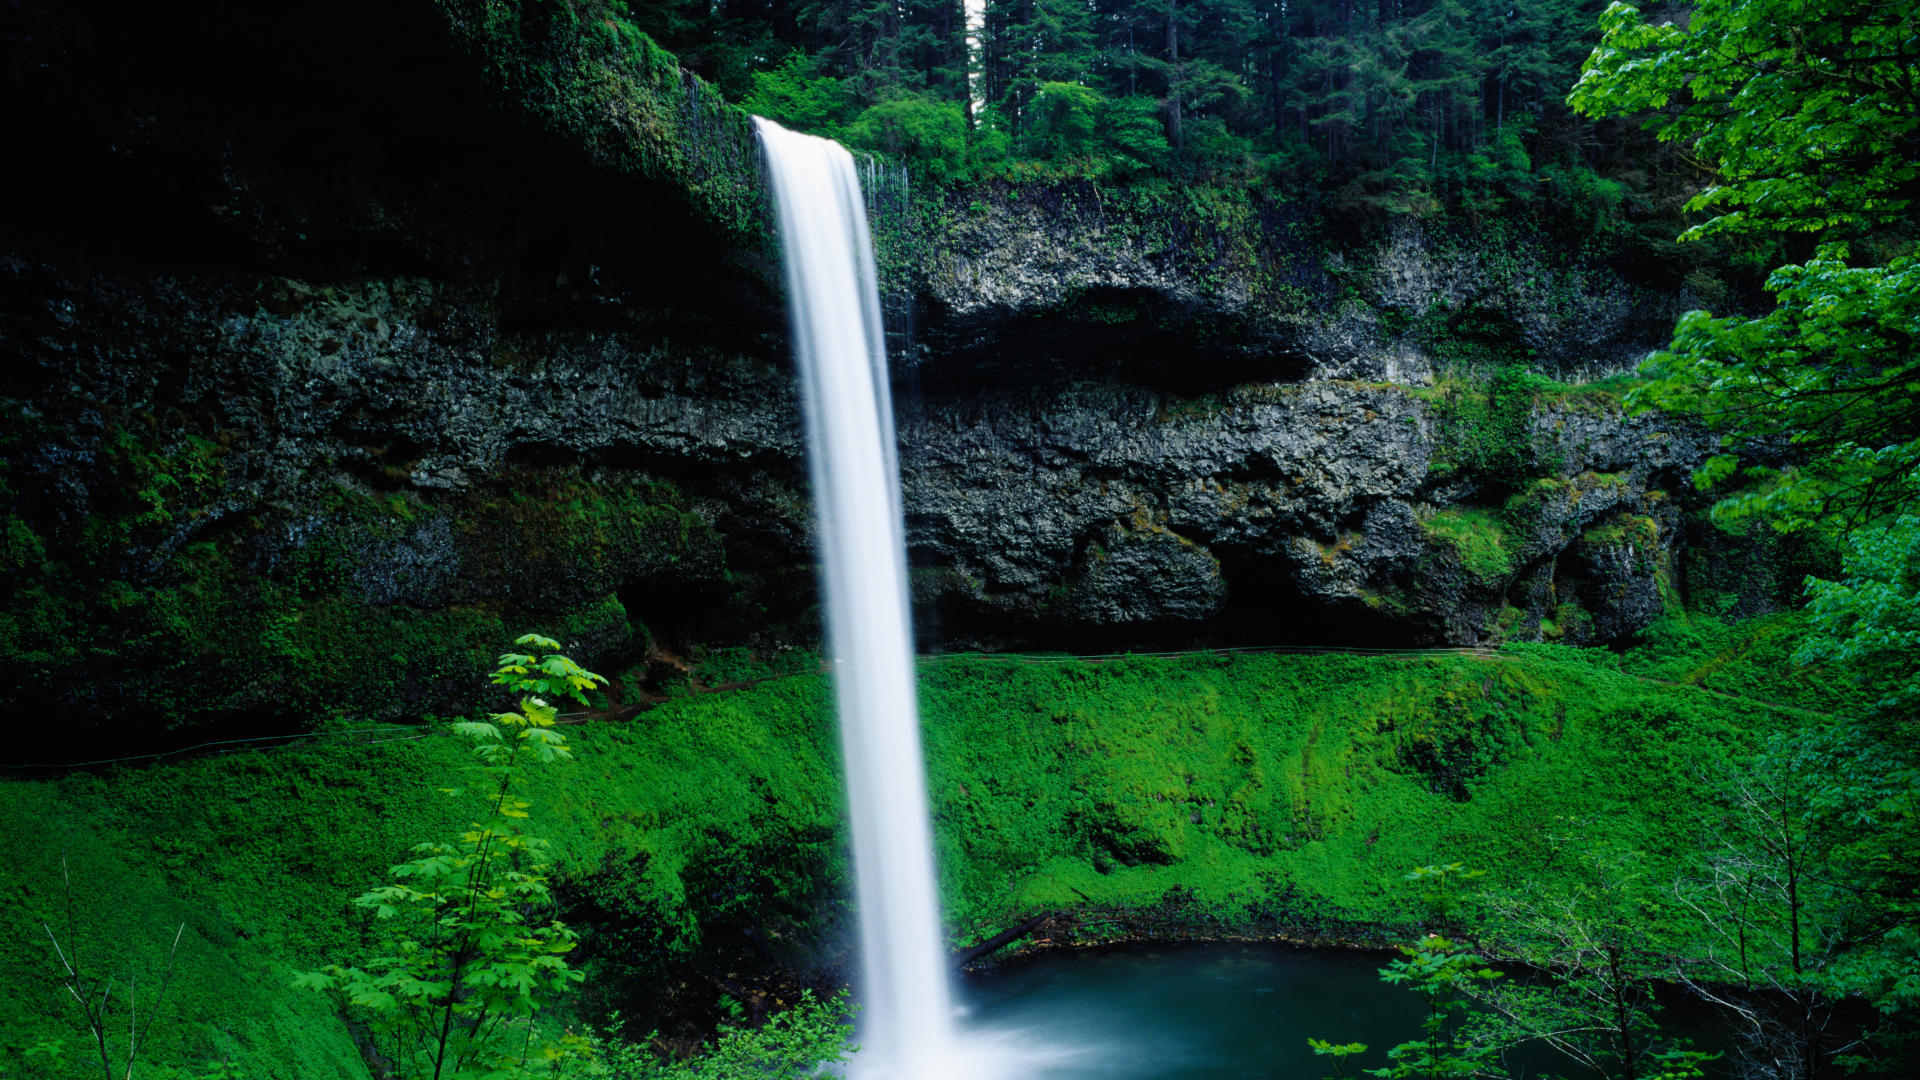 Найти фотки на телефон. Silver Falls State Park Oregon. Красивые водопады. Живая природа водопады. Картинки на заставку компьютера.